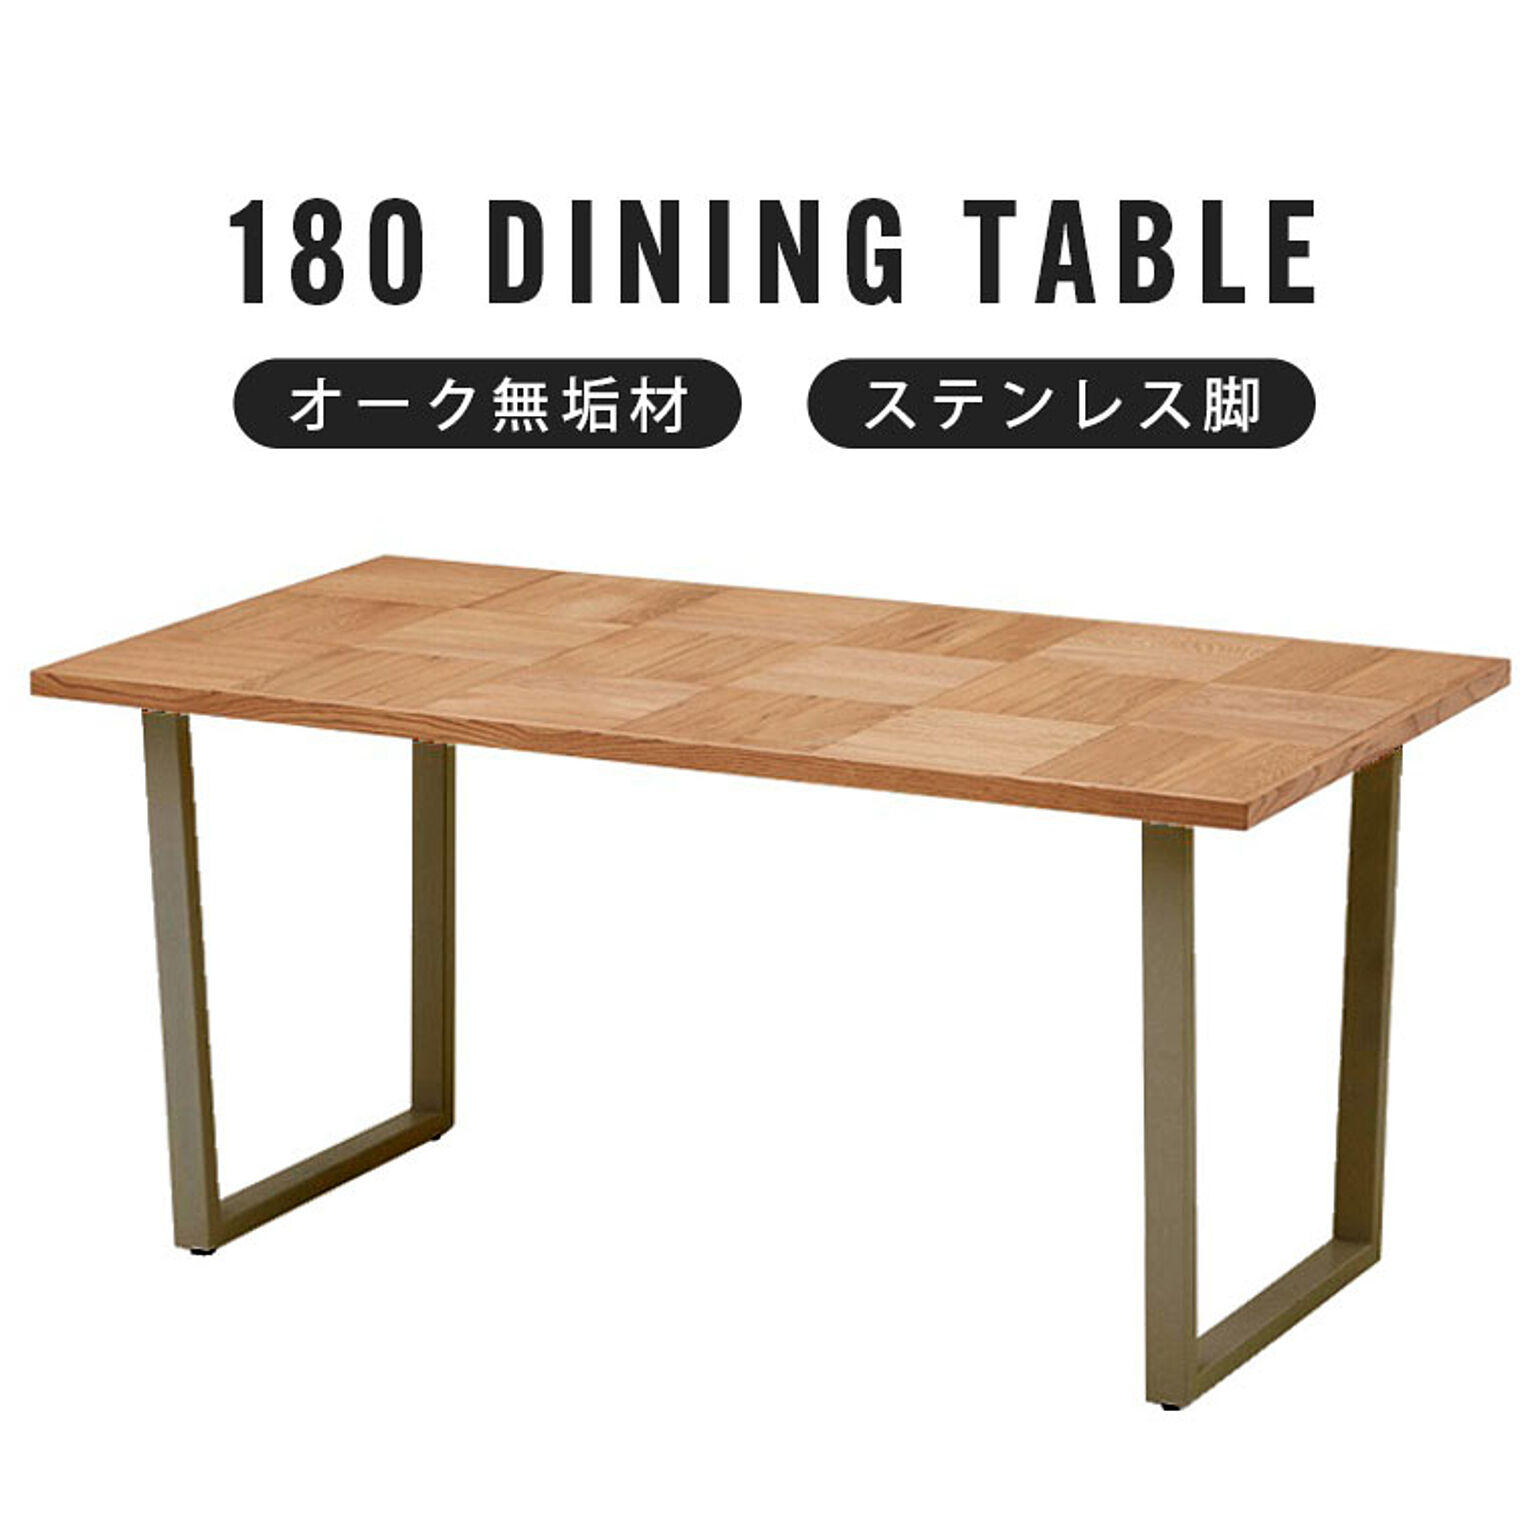 ダイニングテーブル 幅180 食卓テーブル 4人掛け 無垢 木製 レトロ 北欧 モダン ヴィンテージ 西海岸 テーブル 6人用 ブロック柄 ステンレス 艶消し シルバー脚 オーク材 アルゴスブロック